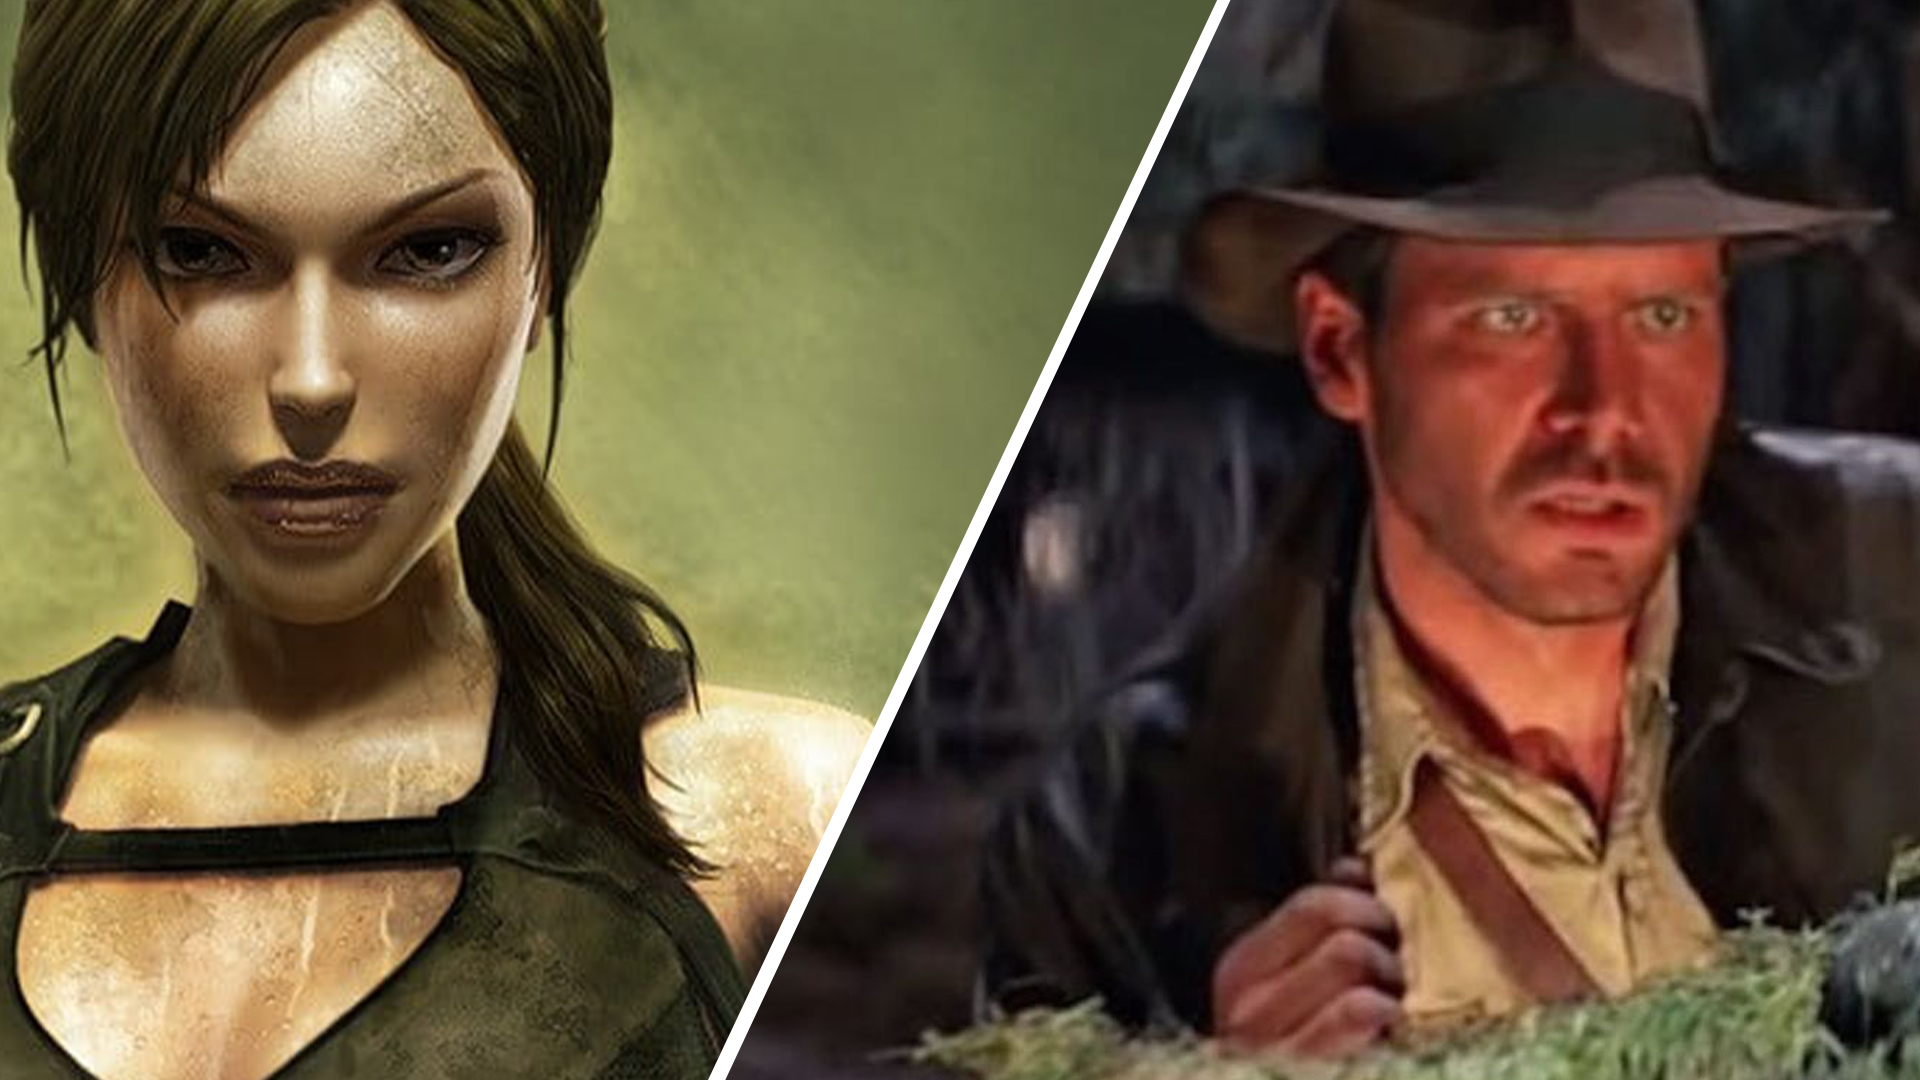 Raider's Lara Croft and Indiana Jones